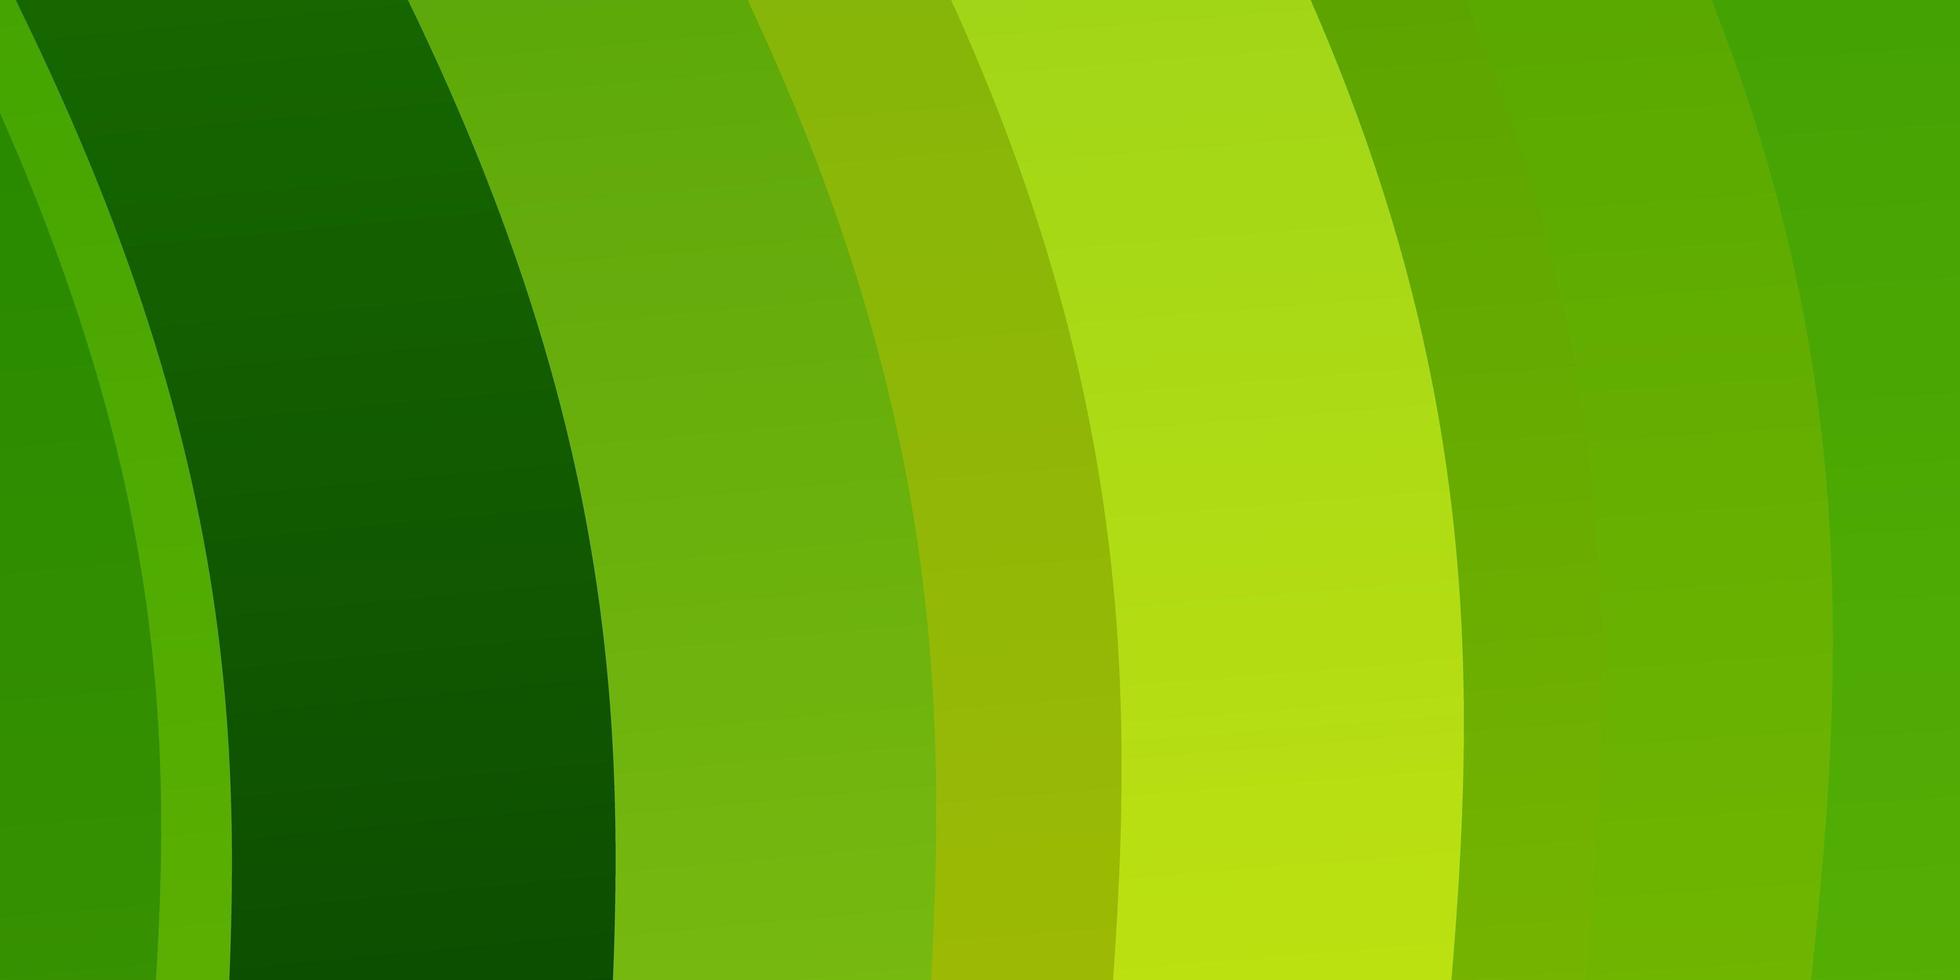 modello vettoriale verde chiaro, giallo con linee.